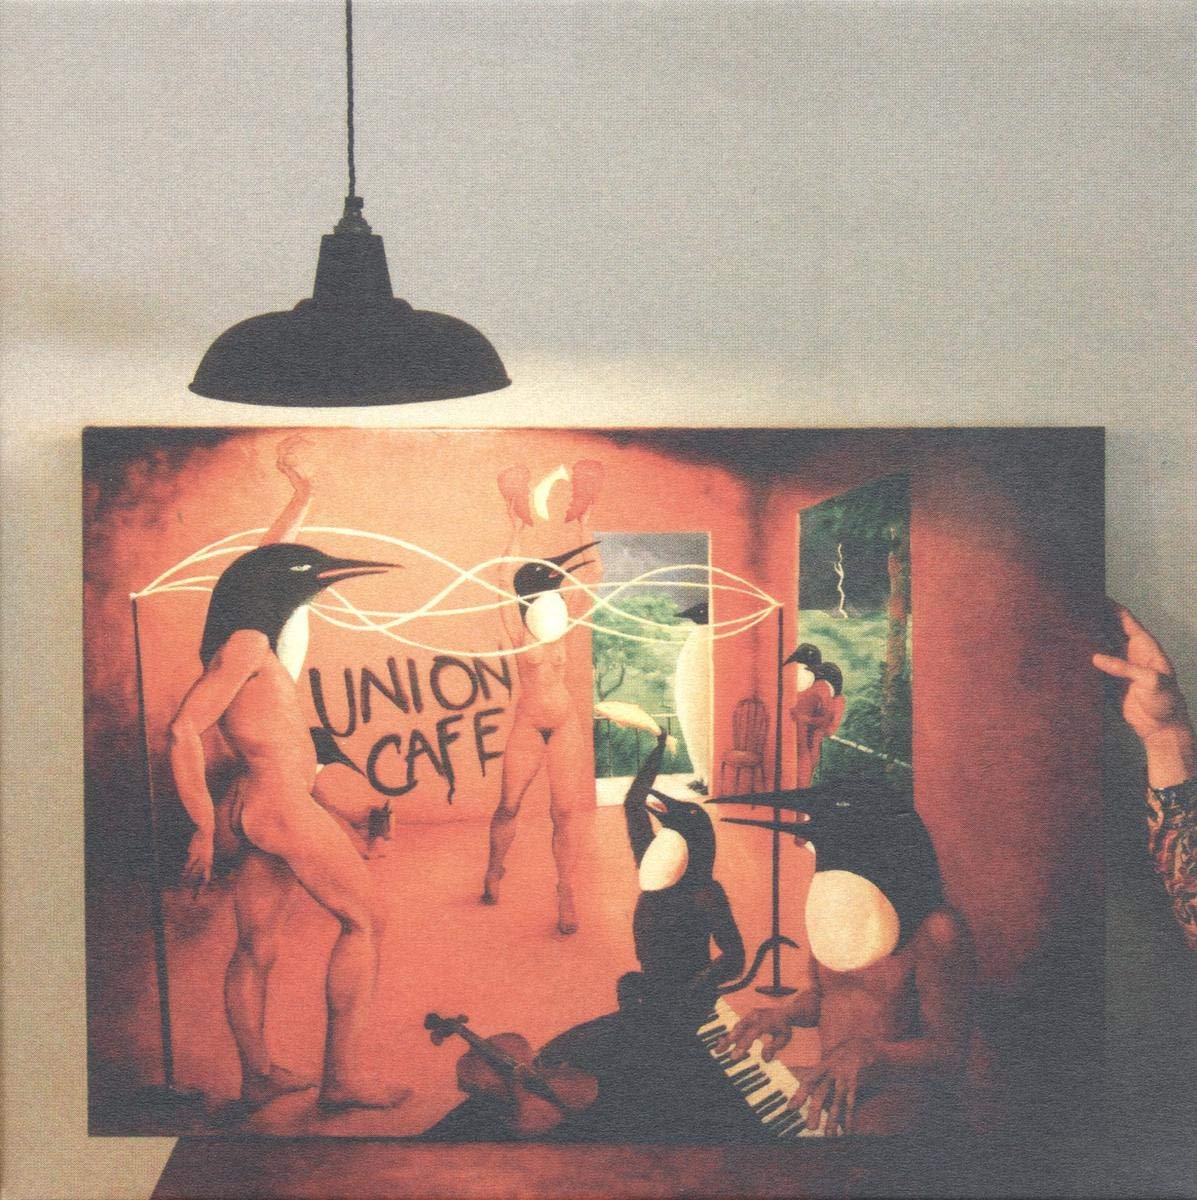 Penguin Cafe Orchestra – Union Cafe 2 x VINYL LP SET